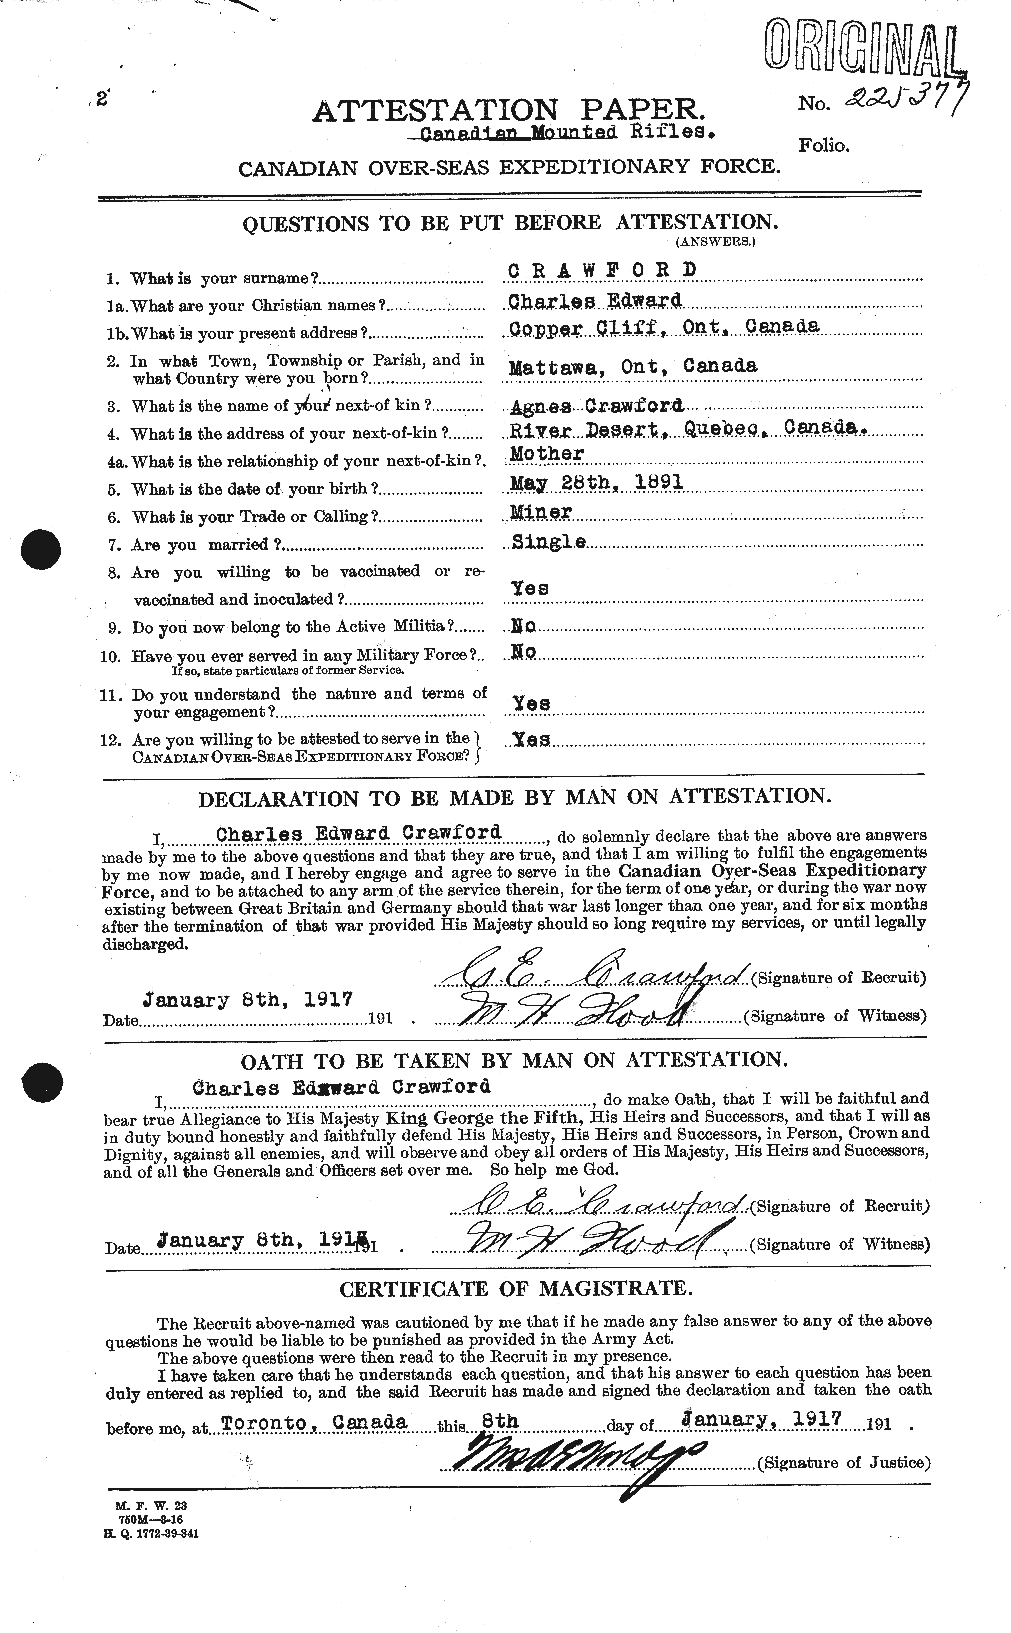 Dossiers du Personnel de la Première Guerre mondiale - CEC 060840a